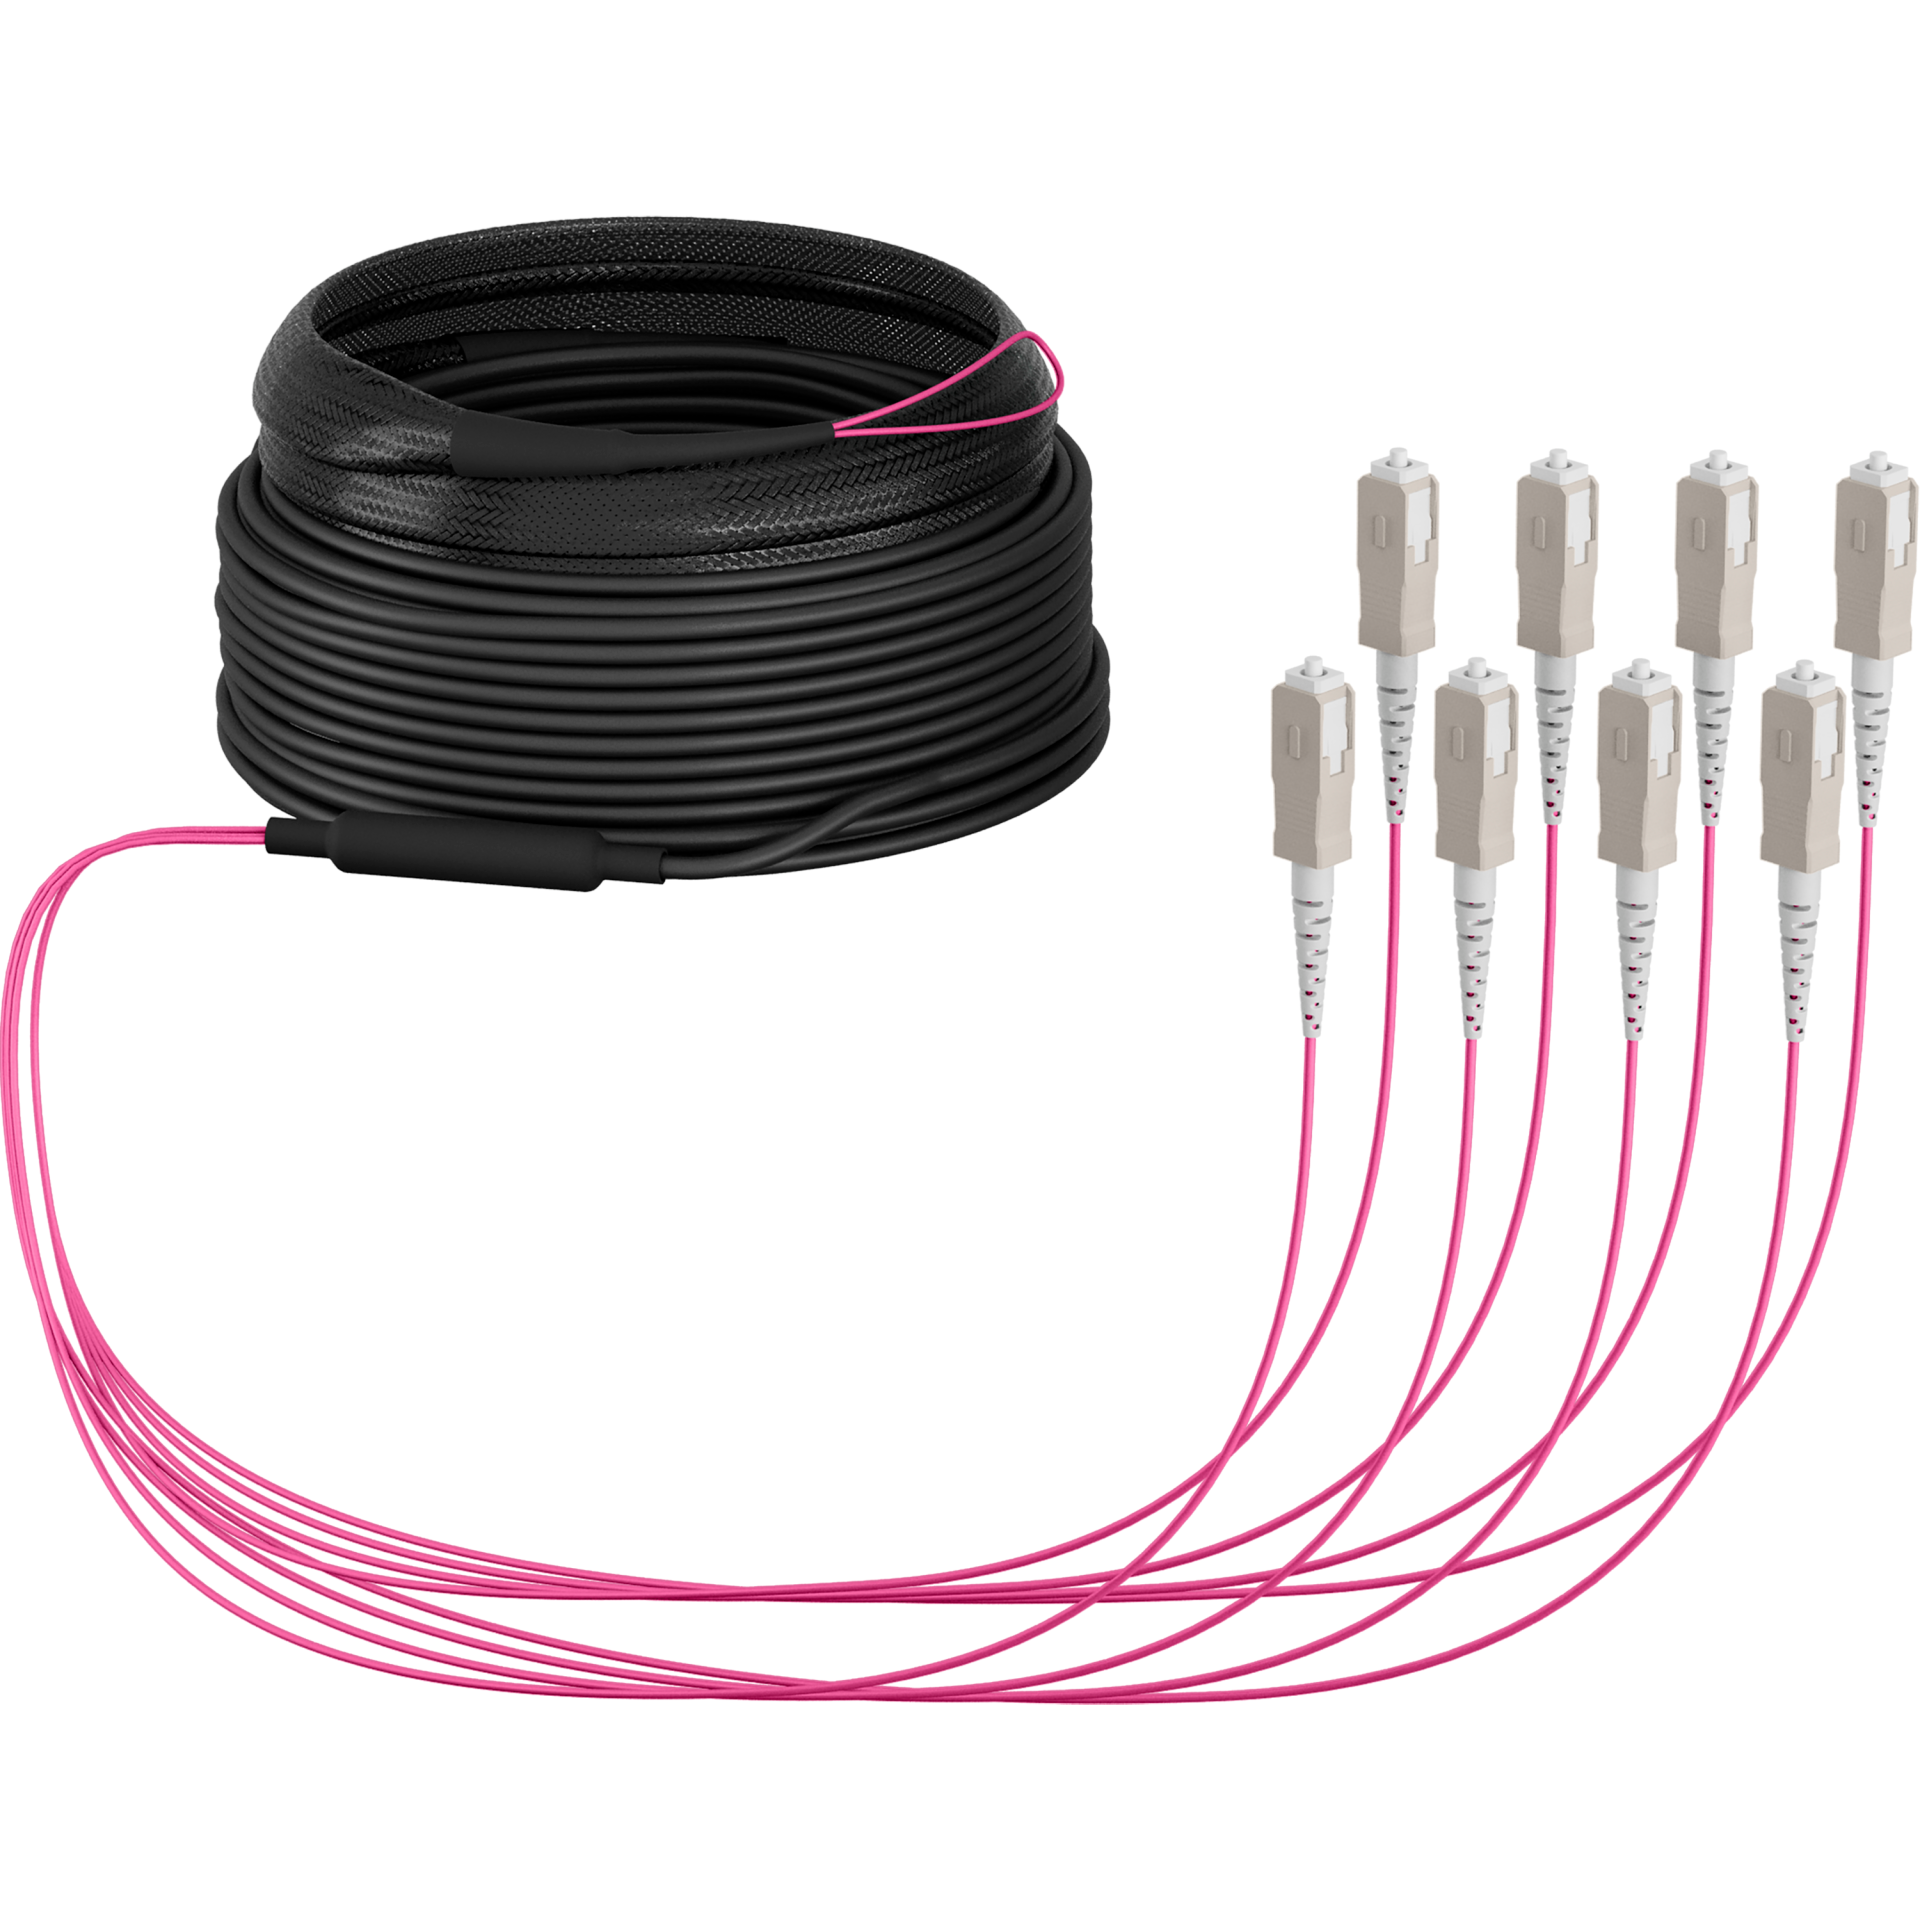 Trunk cable U-DQ(ZN)BH OM4 8G (1x8) SC-SC,40m Dca LSZH